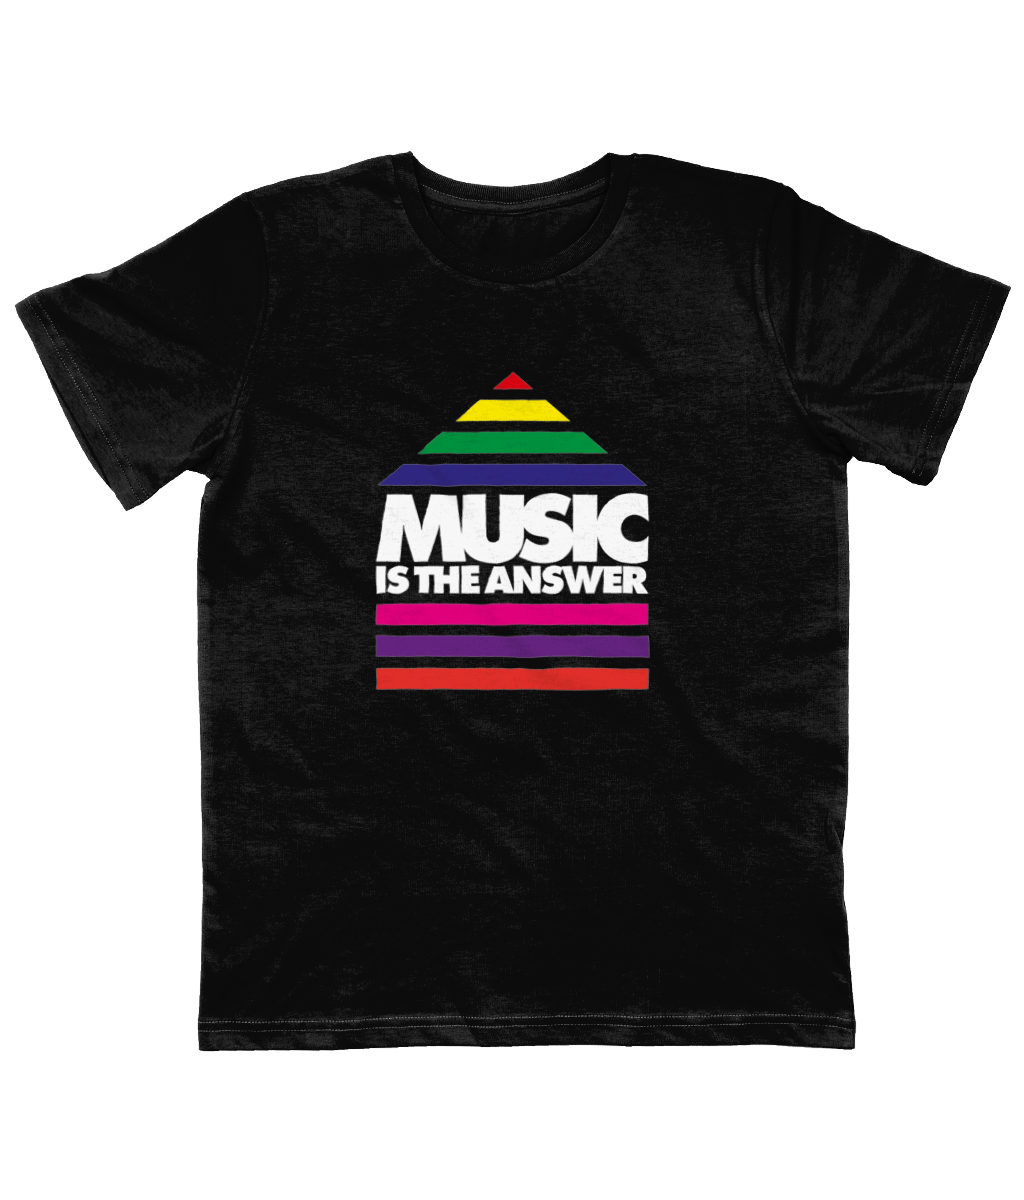 Kids T-Shirt Music Rainbow Logo